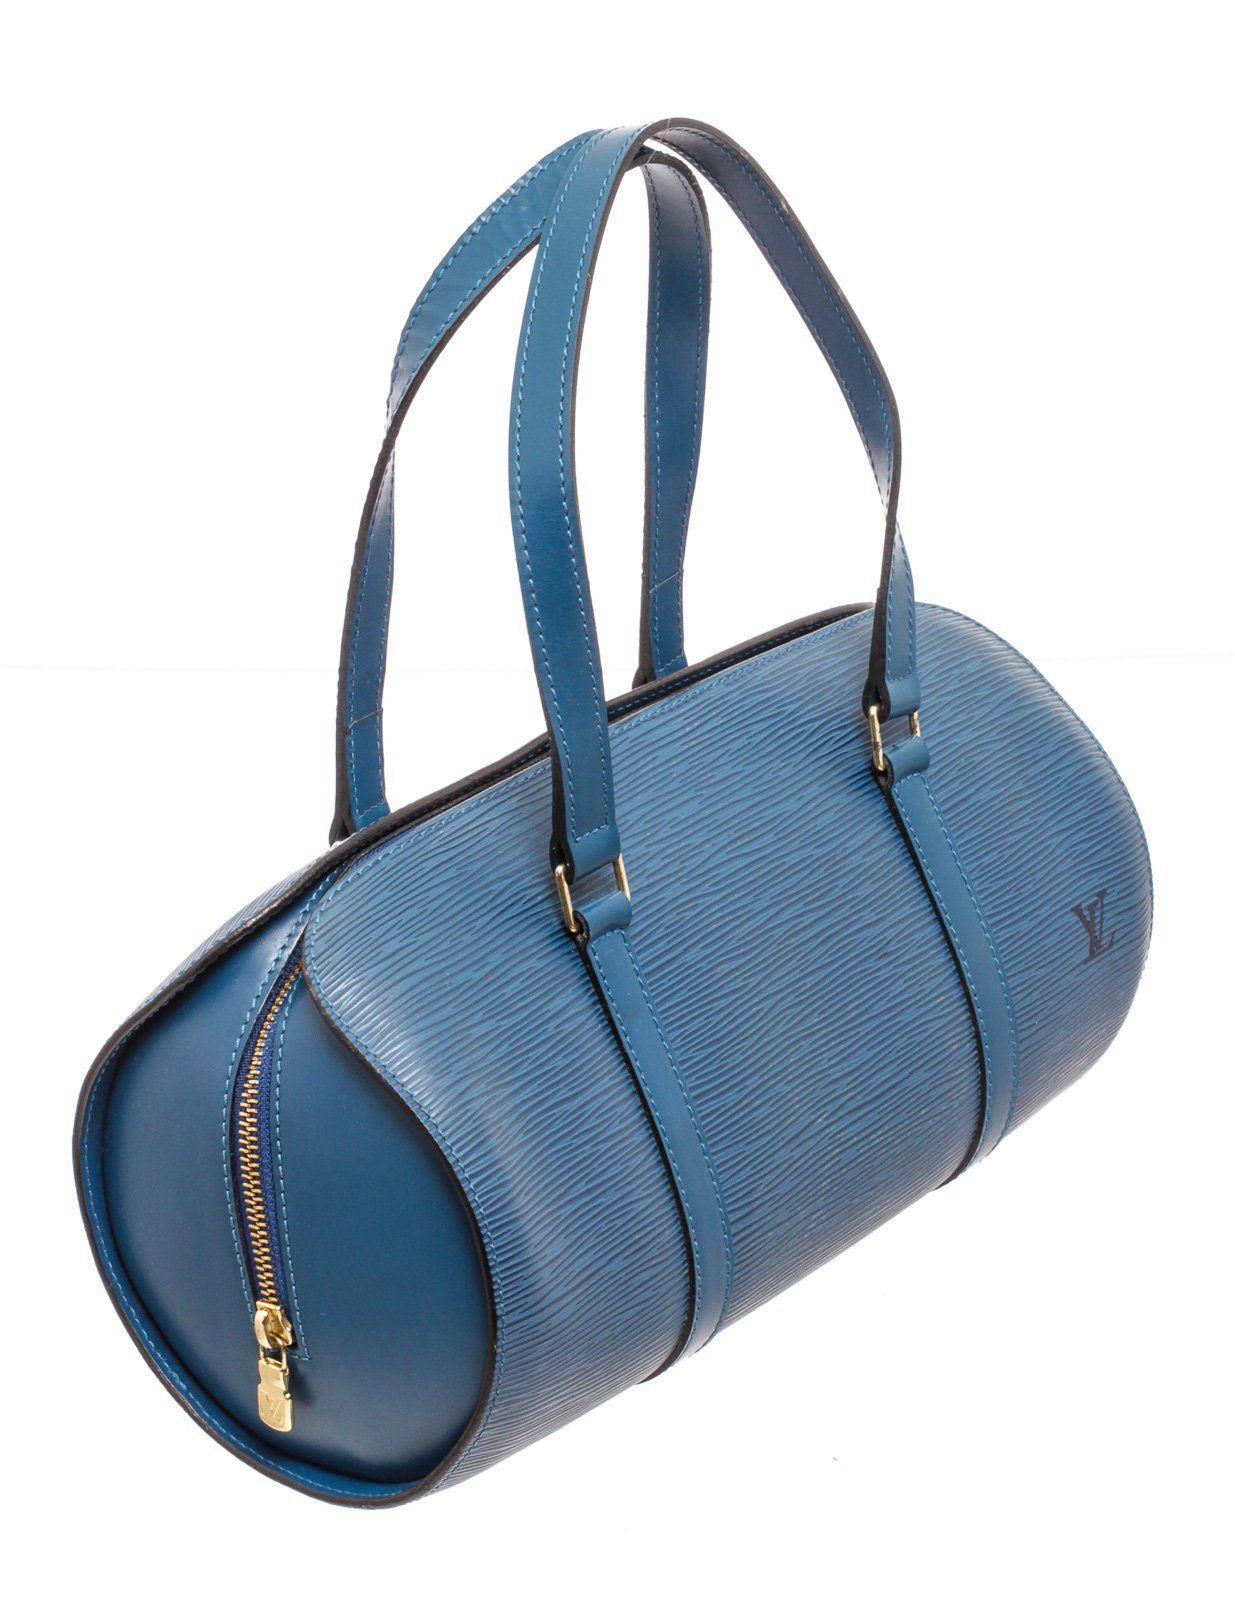 Louis Vuitton Blue Soufflot Shoulder Bag with gold-tone hardware, trim tan vachetta leather, dual top handle, shoulder strap and zipper closure.

26189MSC